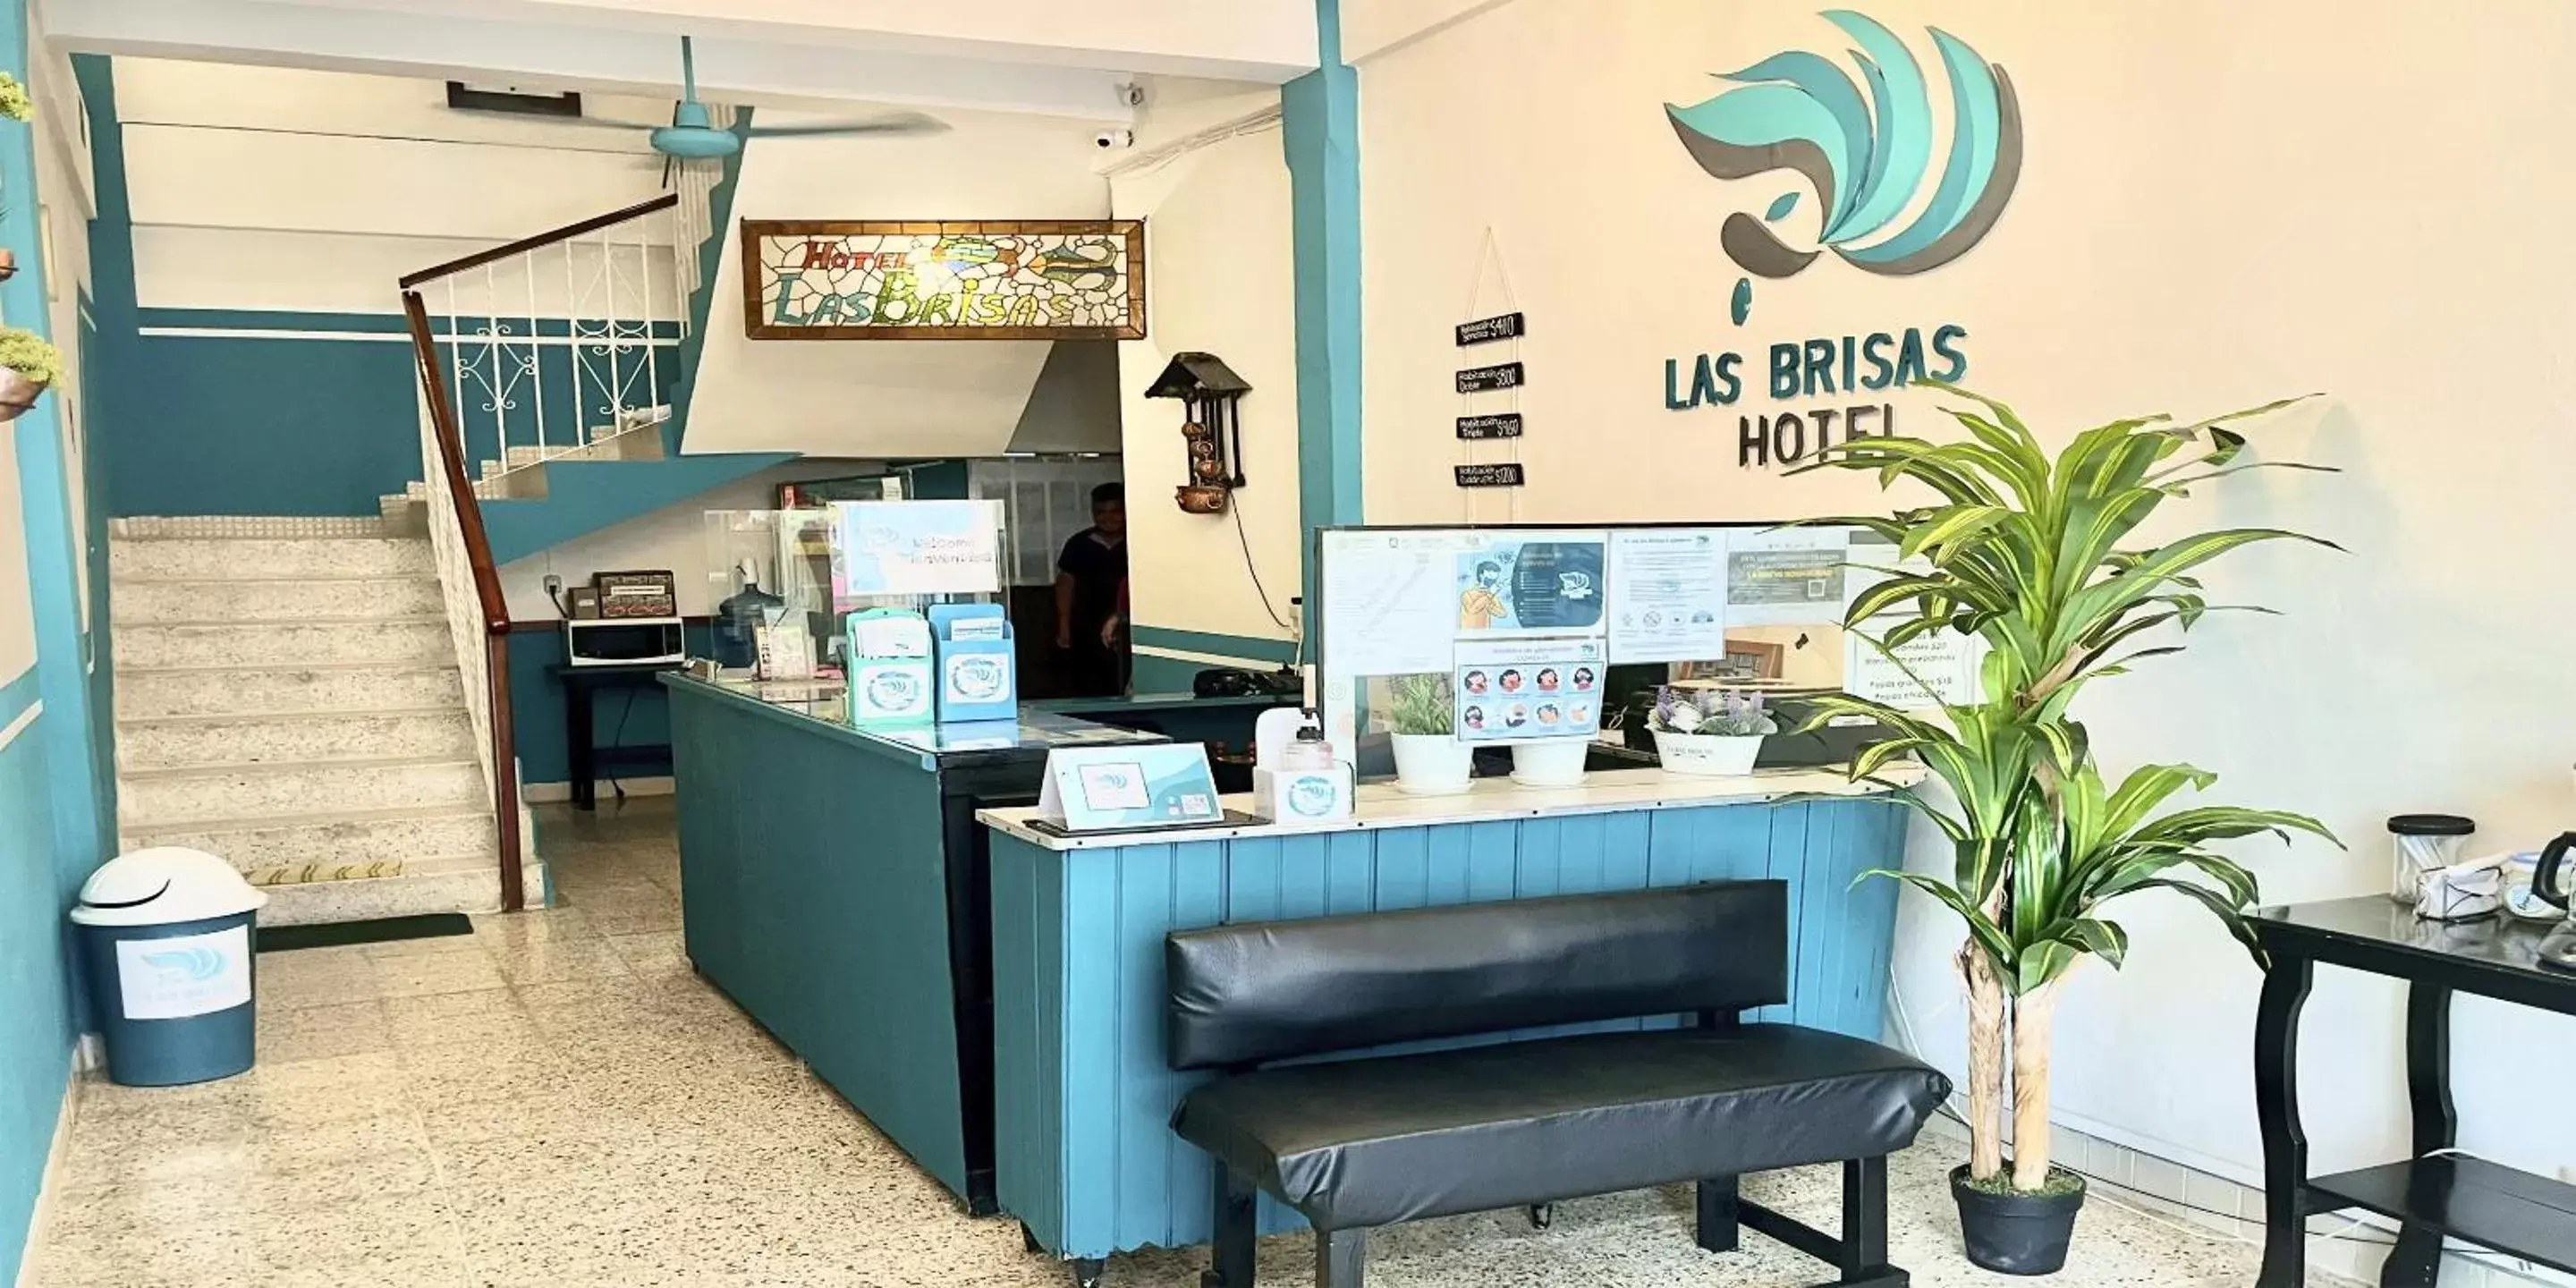 Lobby or reception, Lobby/Reception in Hotel Las Brisas